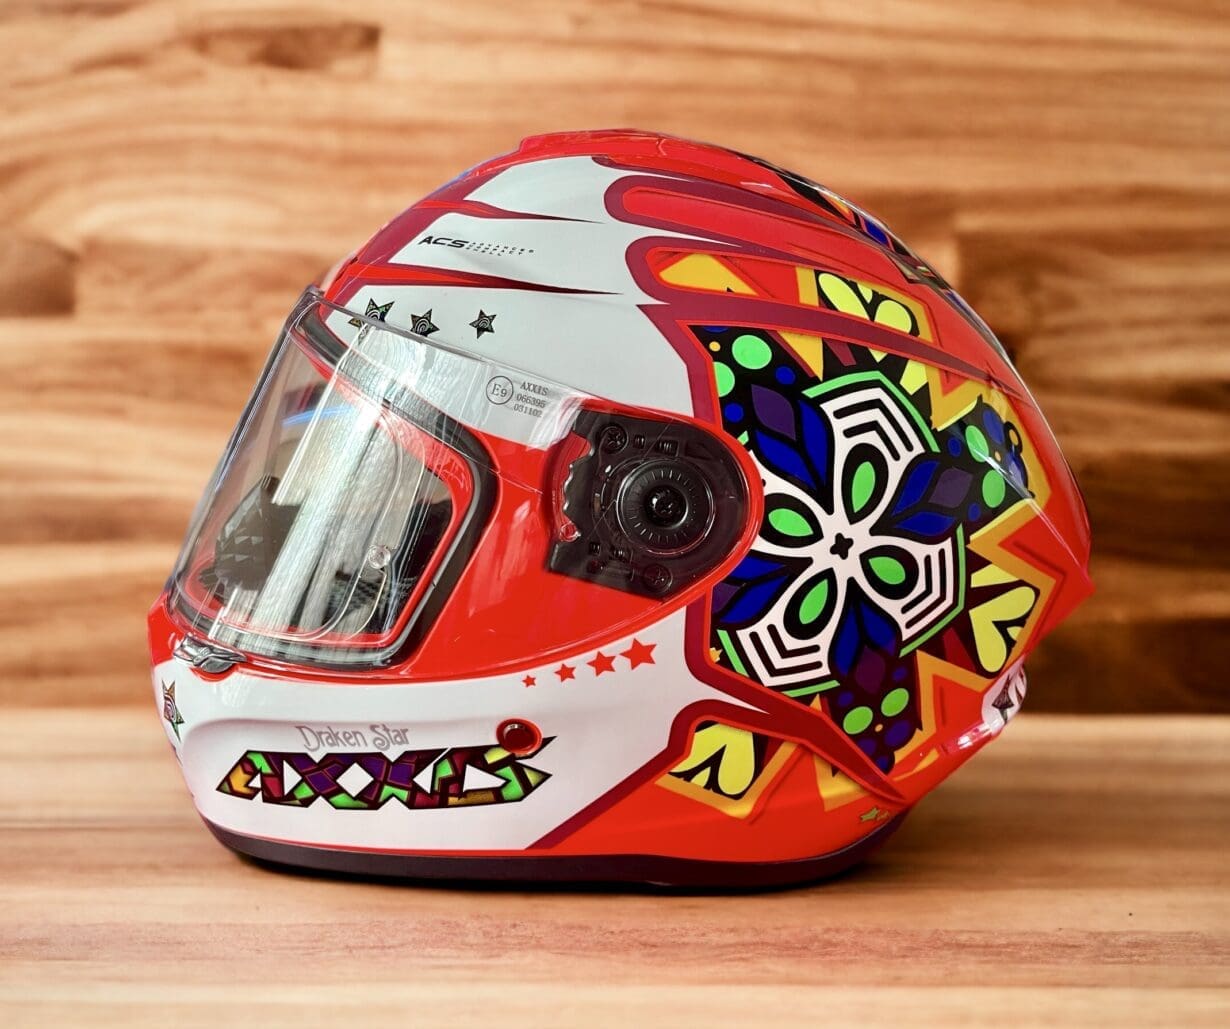 What we wear: Draken S Star full-face motorcycle helmet